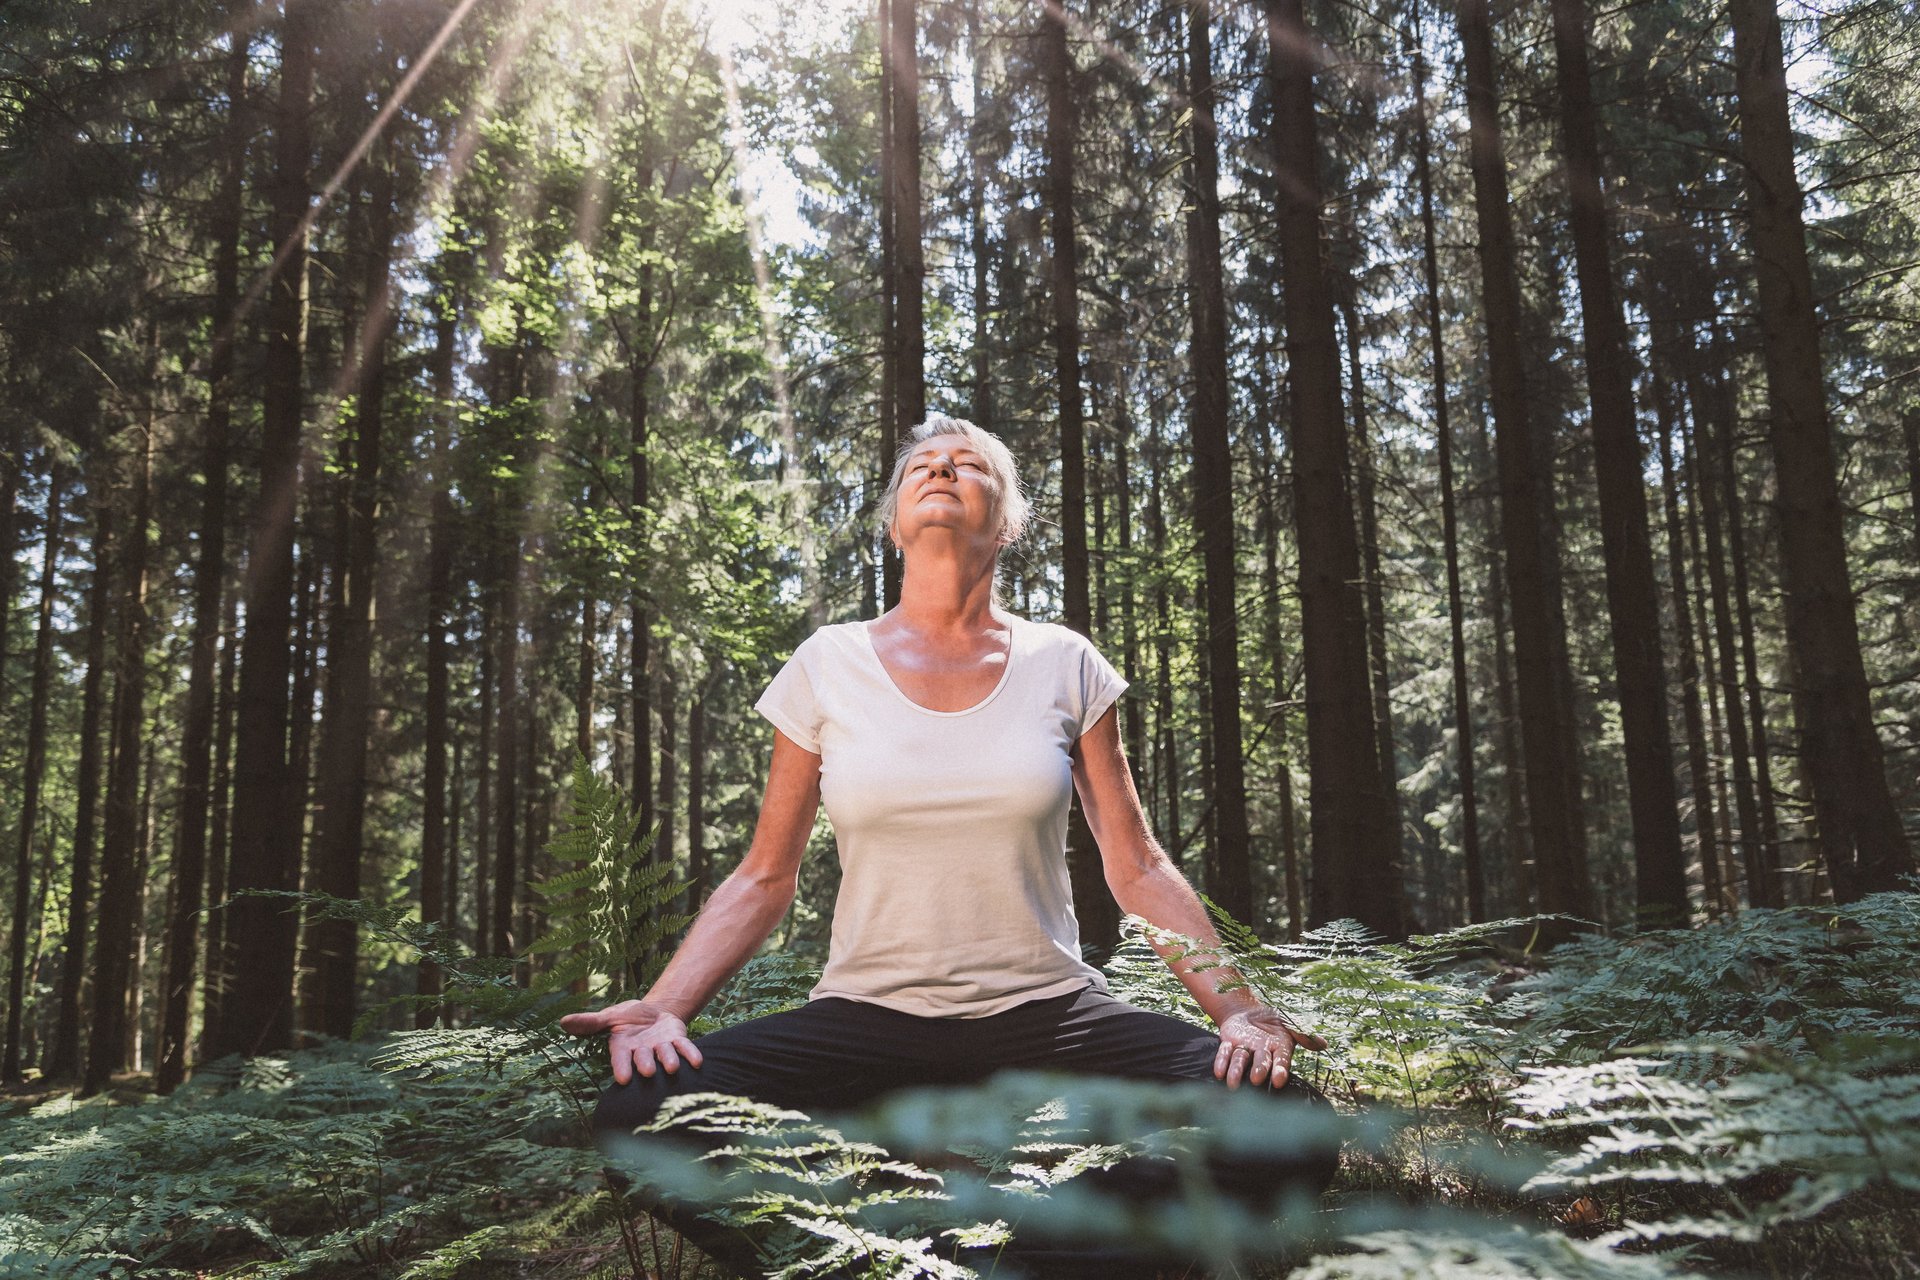 Frau im Wald im Schneidersitz am Meditieren